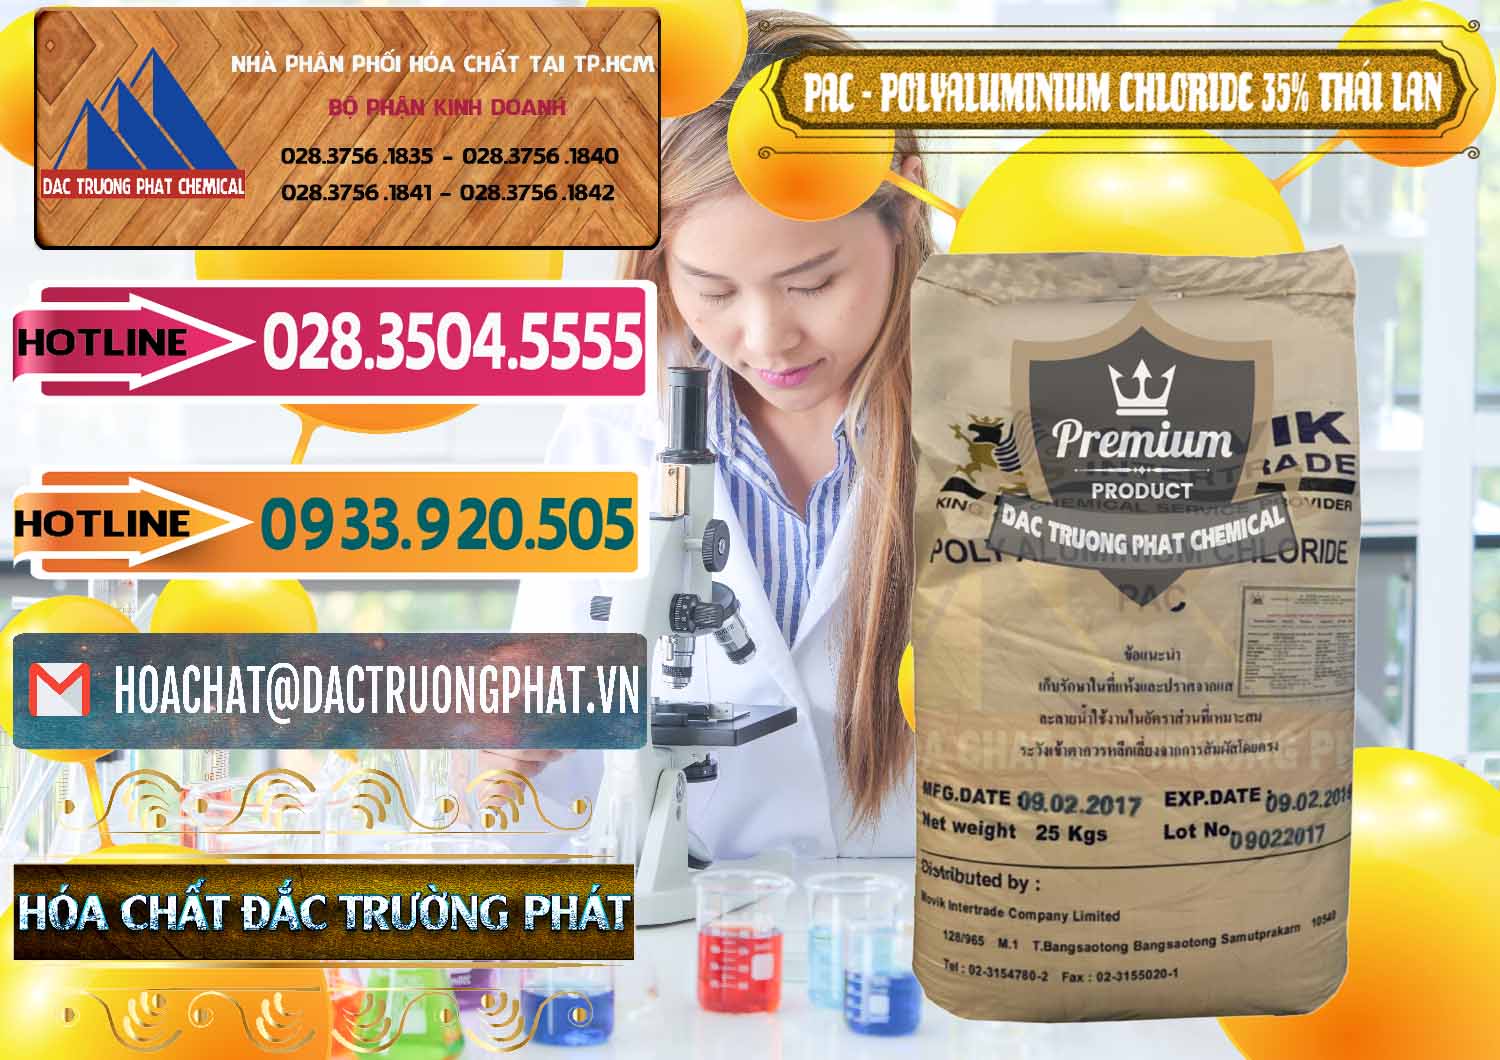 Công ty bán _ cung cấp PAC - Polyaluminium Chloride 35% Thái Lan Thailand - 0470 - Phân phối & kinh doanh hóa chất tại TP.HCM - dactruongphat.vn